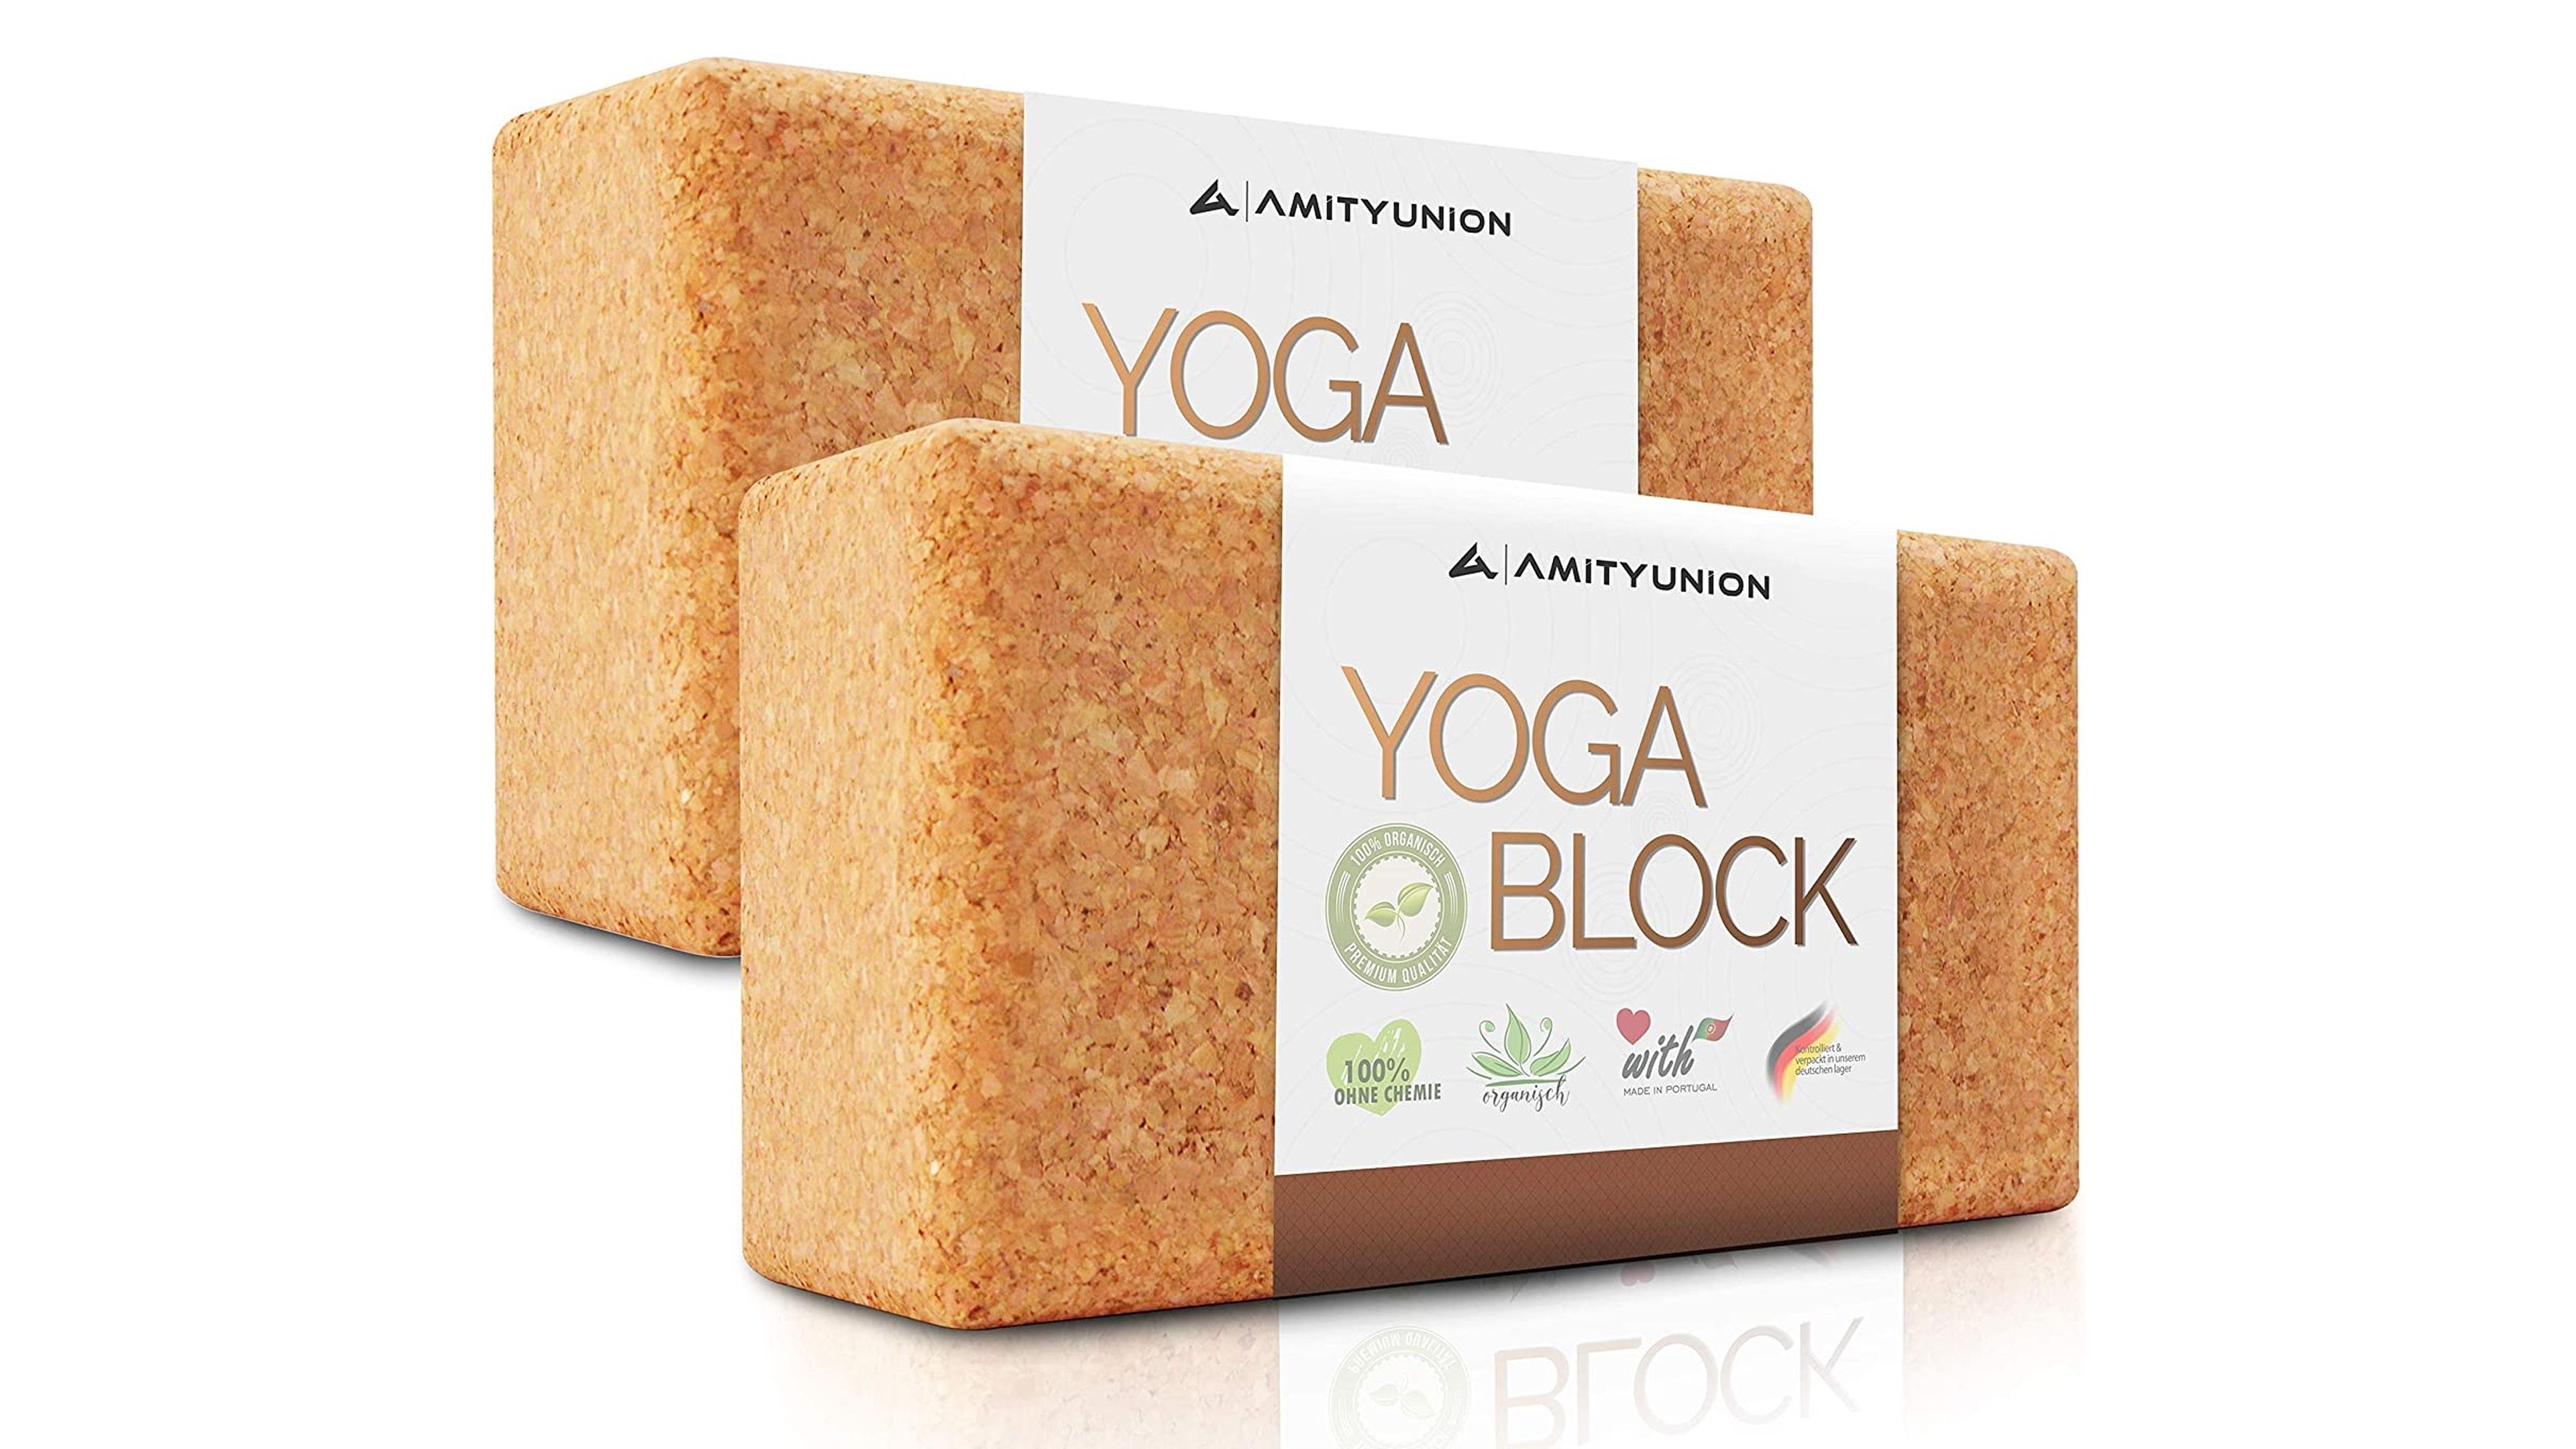 Amityunion Yoga Blocks